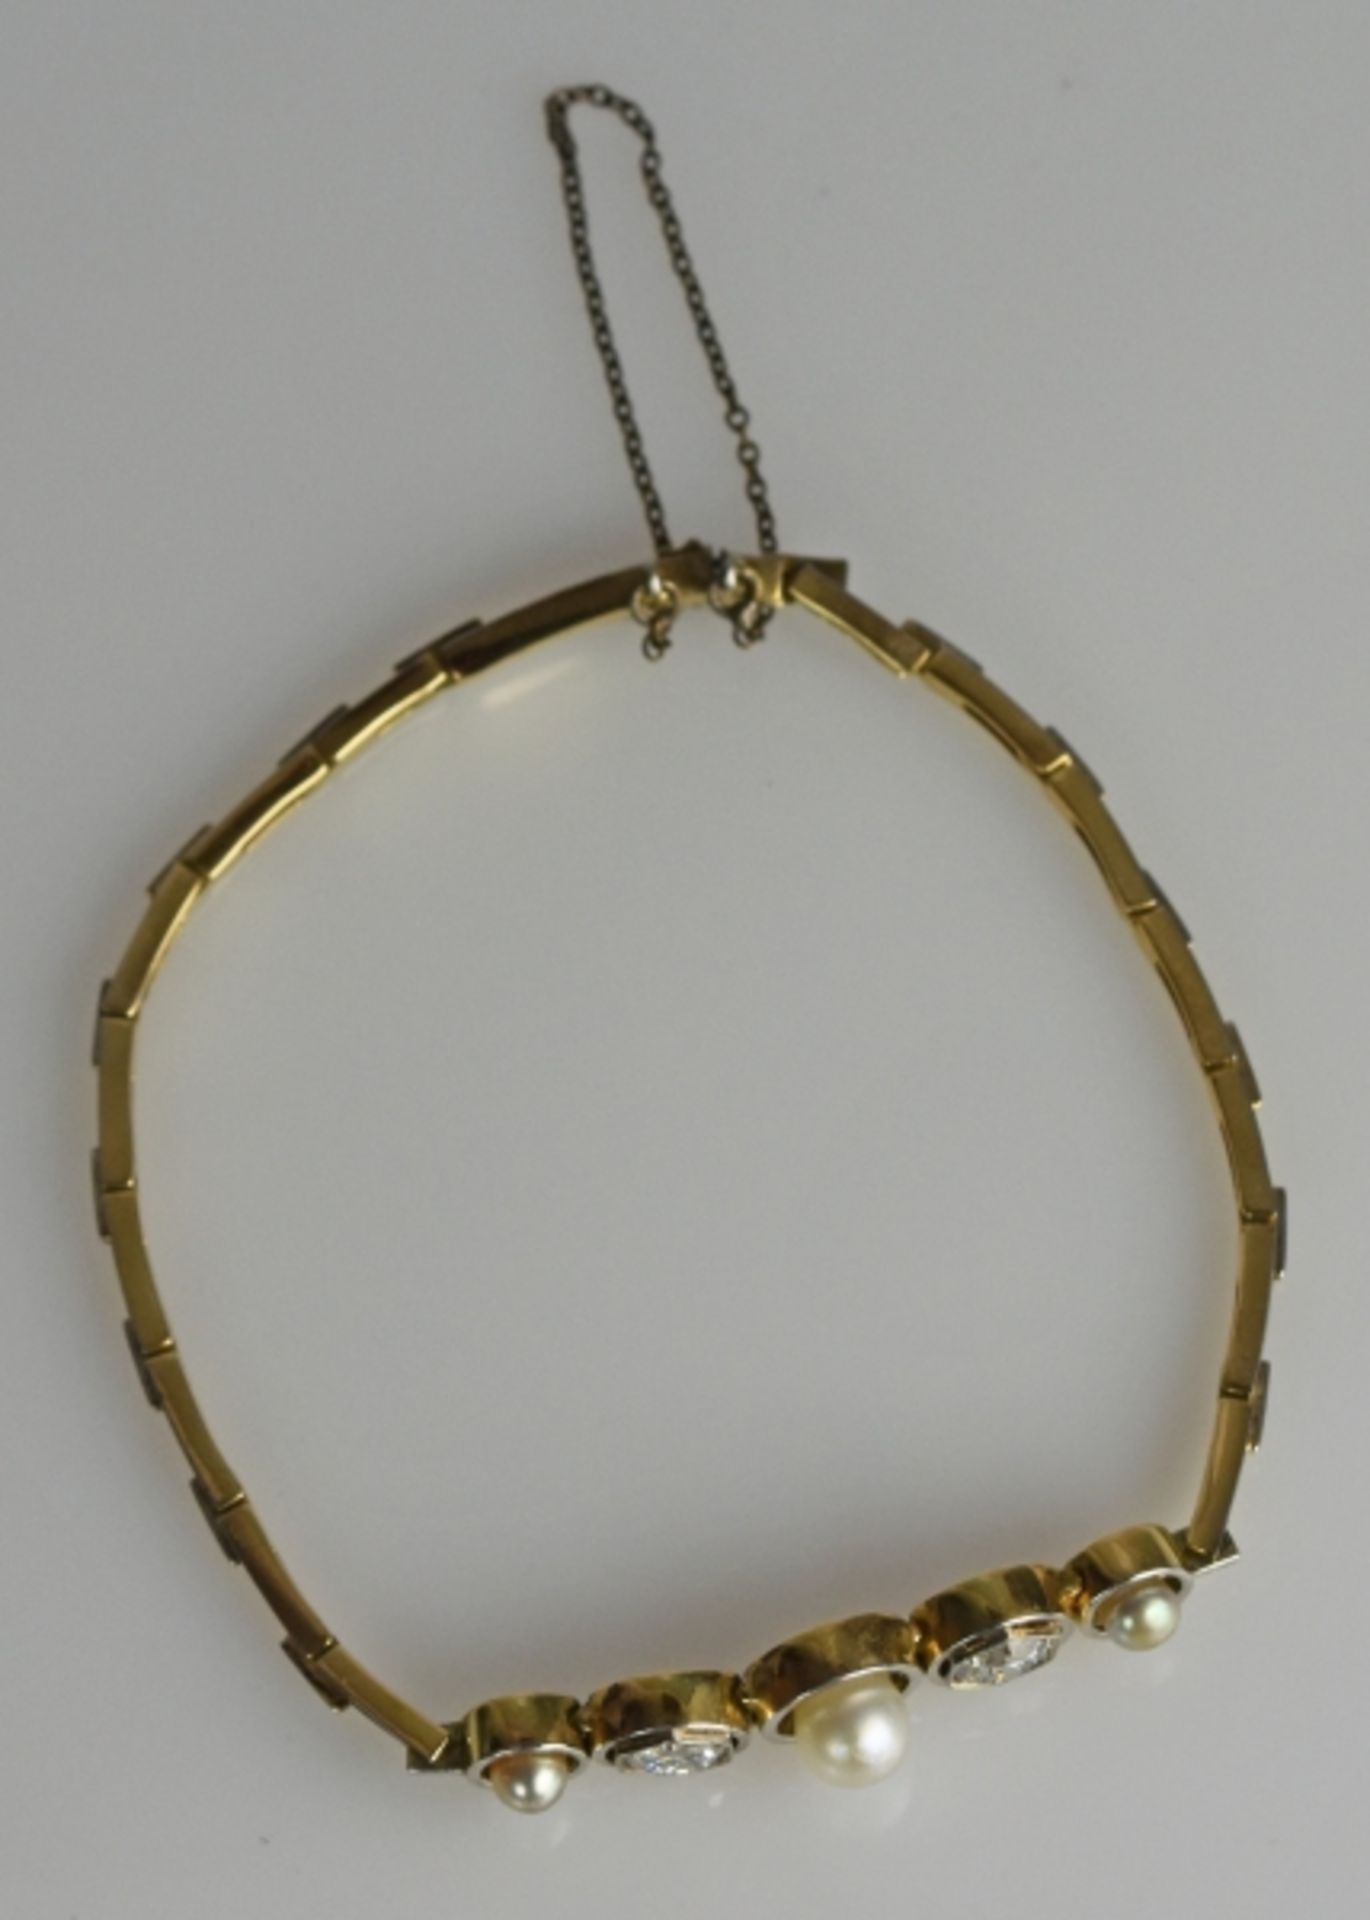 ARMBAND besetzt mit 2 Altschliffdiamanten gesamt um 0,75-1ct und drei Perlen in schlichter - Bild 4 aus 5